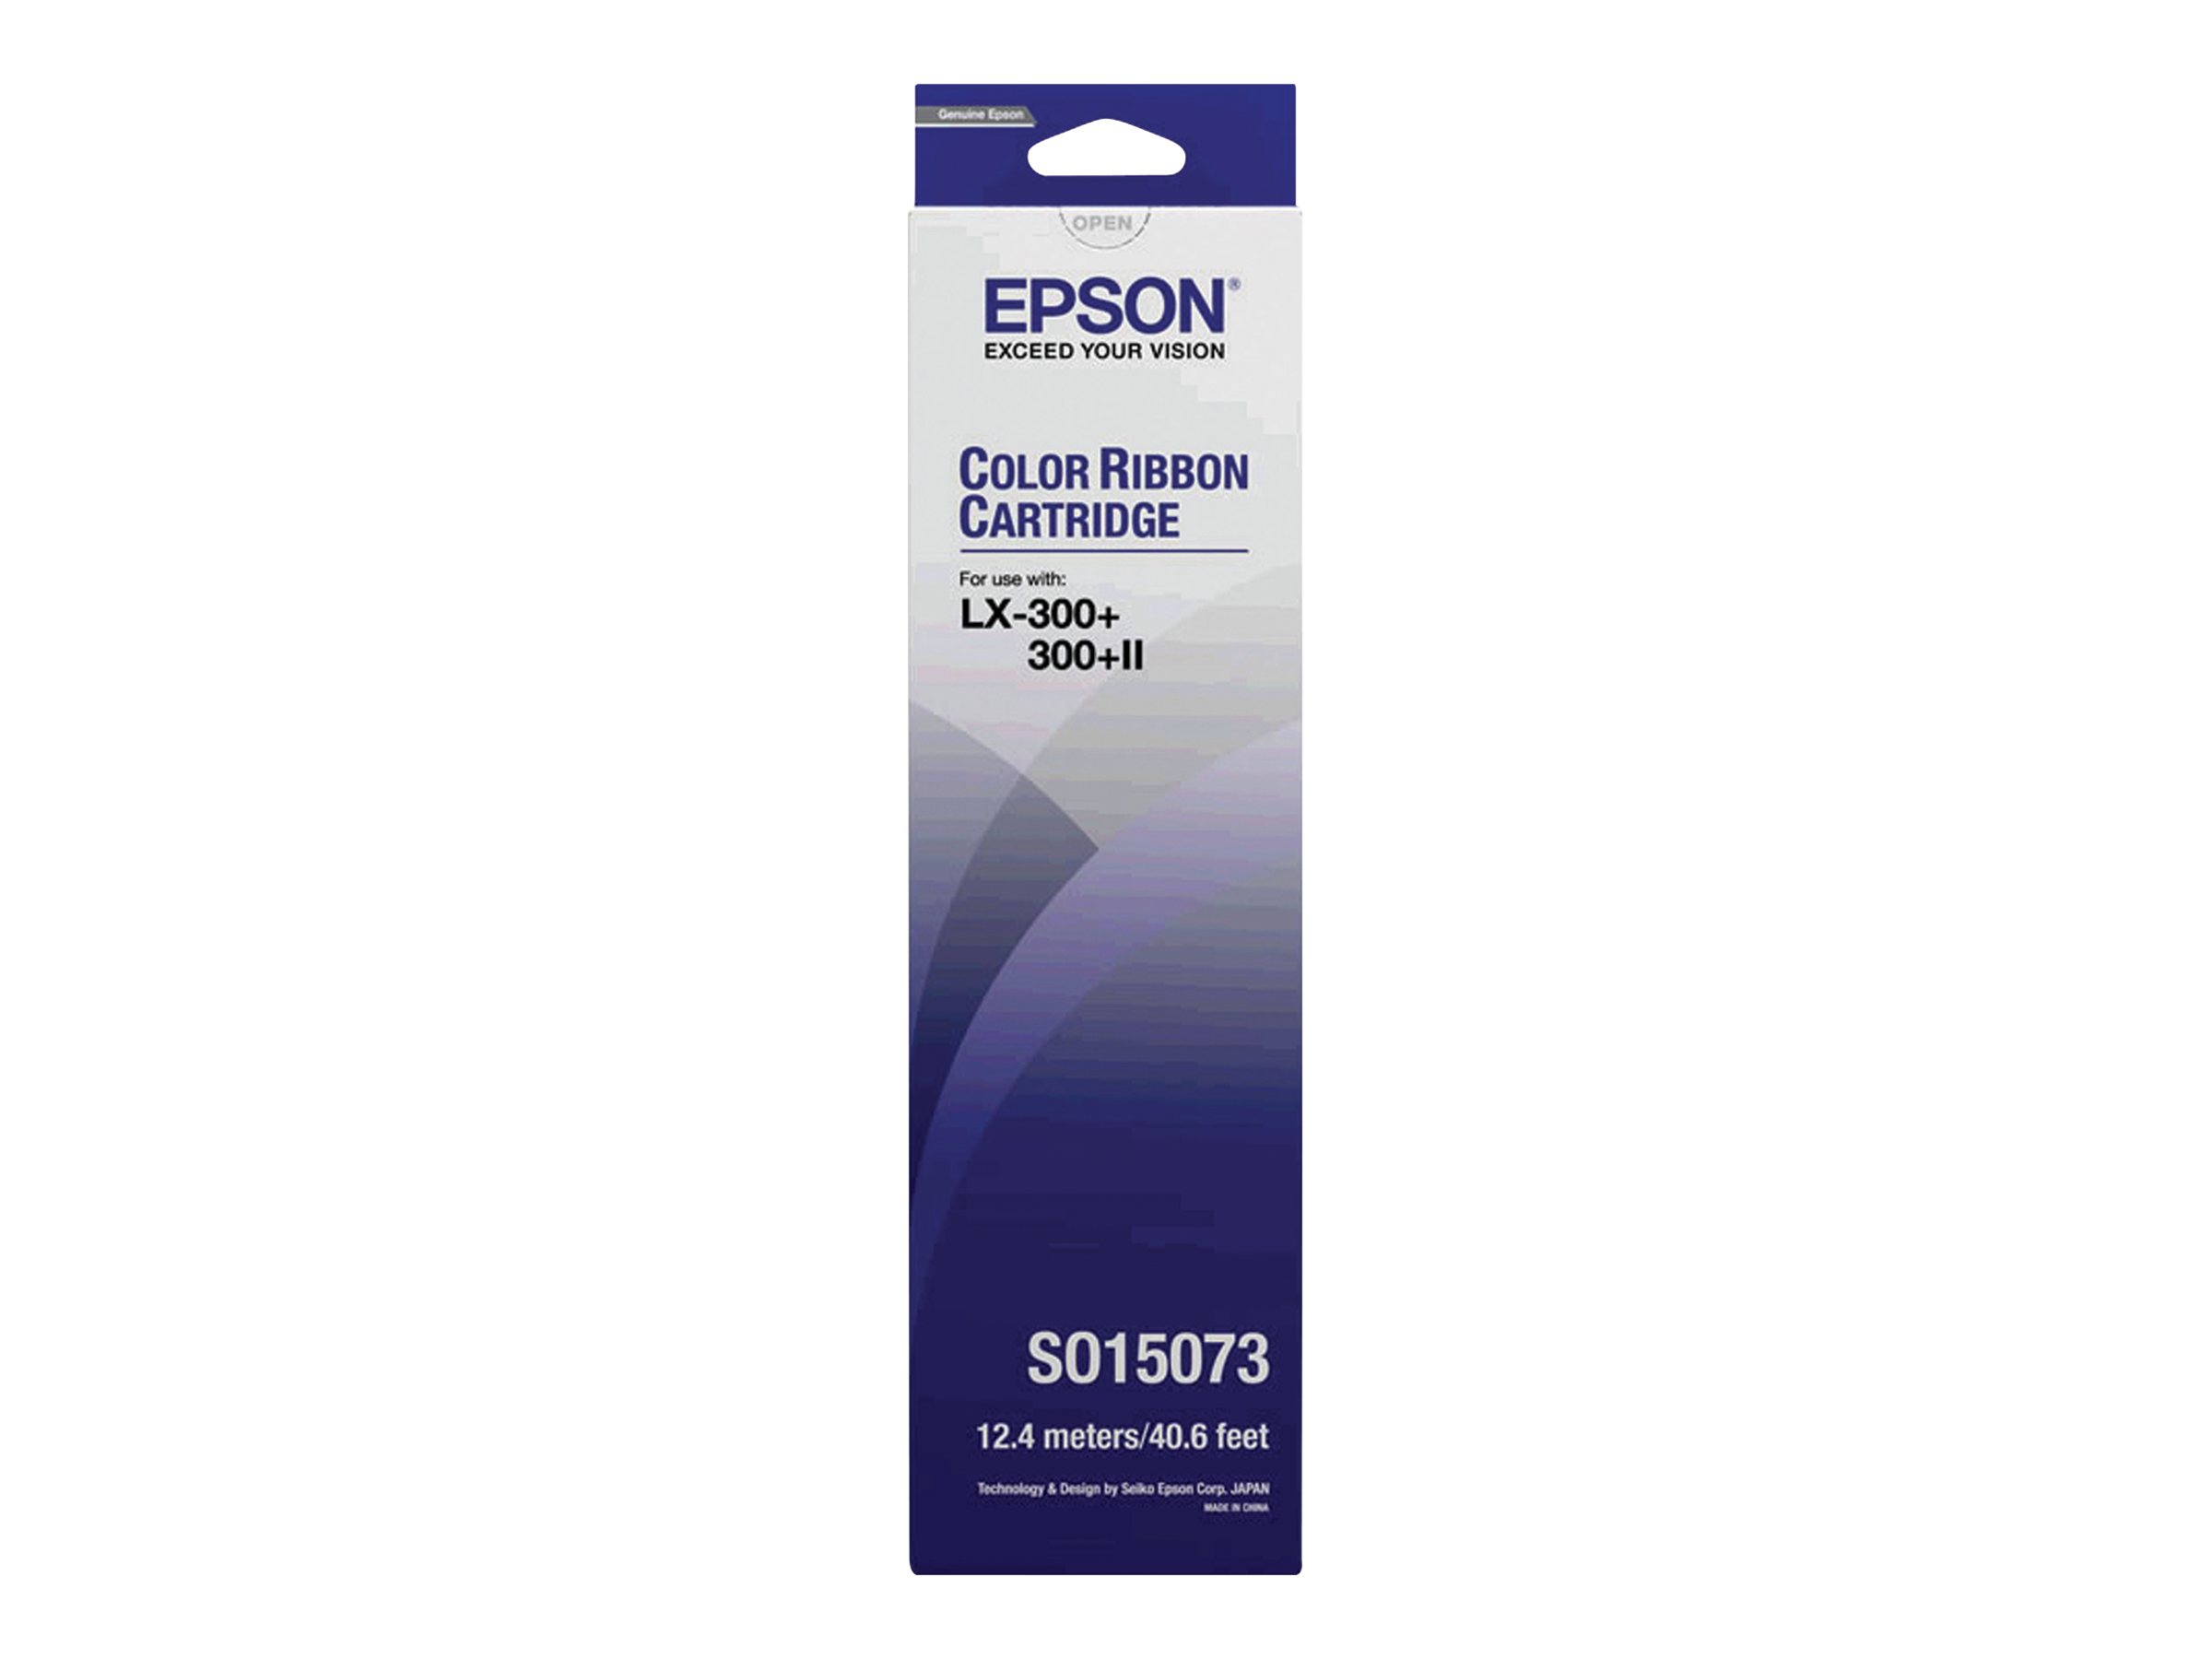 Epson - Gelb, Cyan, Magenta - Textilband - fr LX 300, 300+, 300+II, 300+II Colour